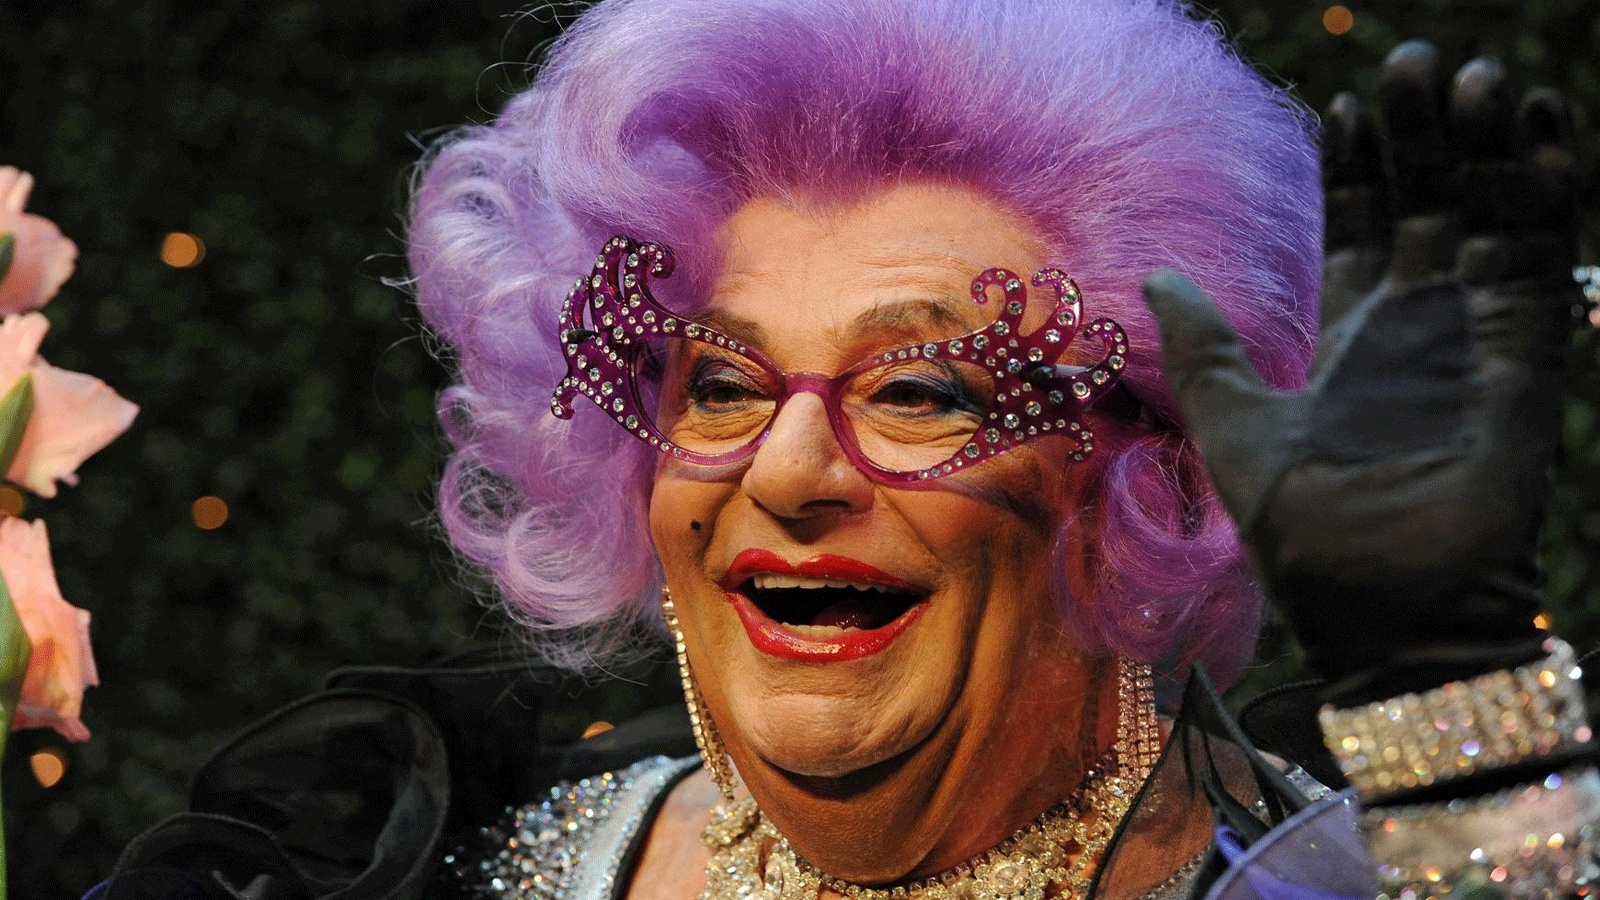 صورة التُقِطَت عام 2012، للممثل الكوميدي الأسترالي، والمؤلف باري همفريز، وهو يرتدي زي الأنا المتغيرة، السيدة إدنا إيفراج